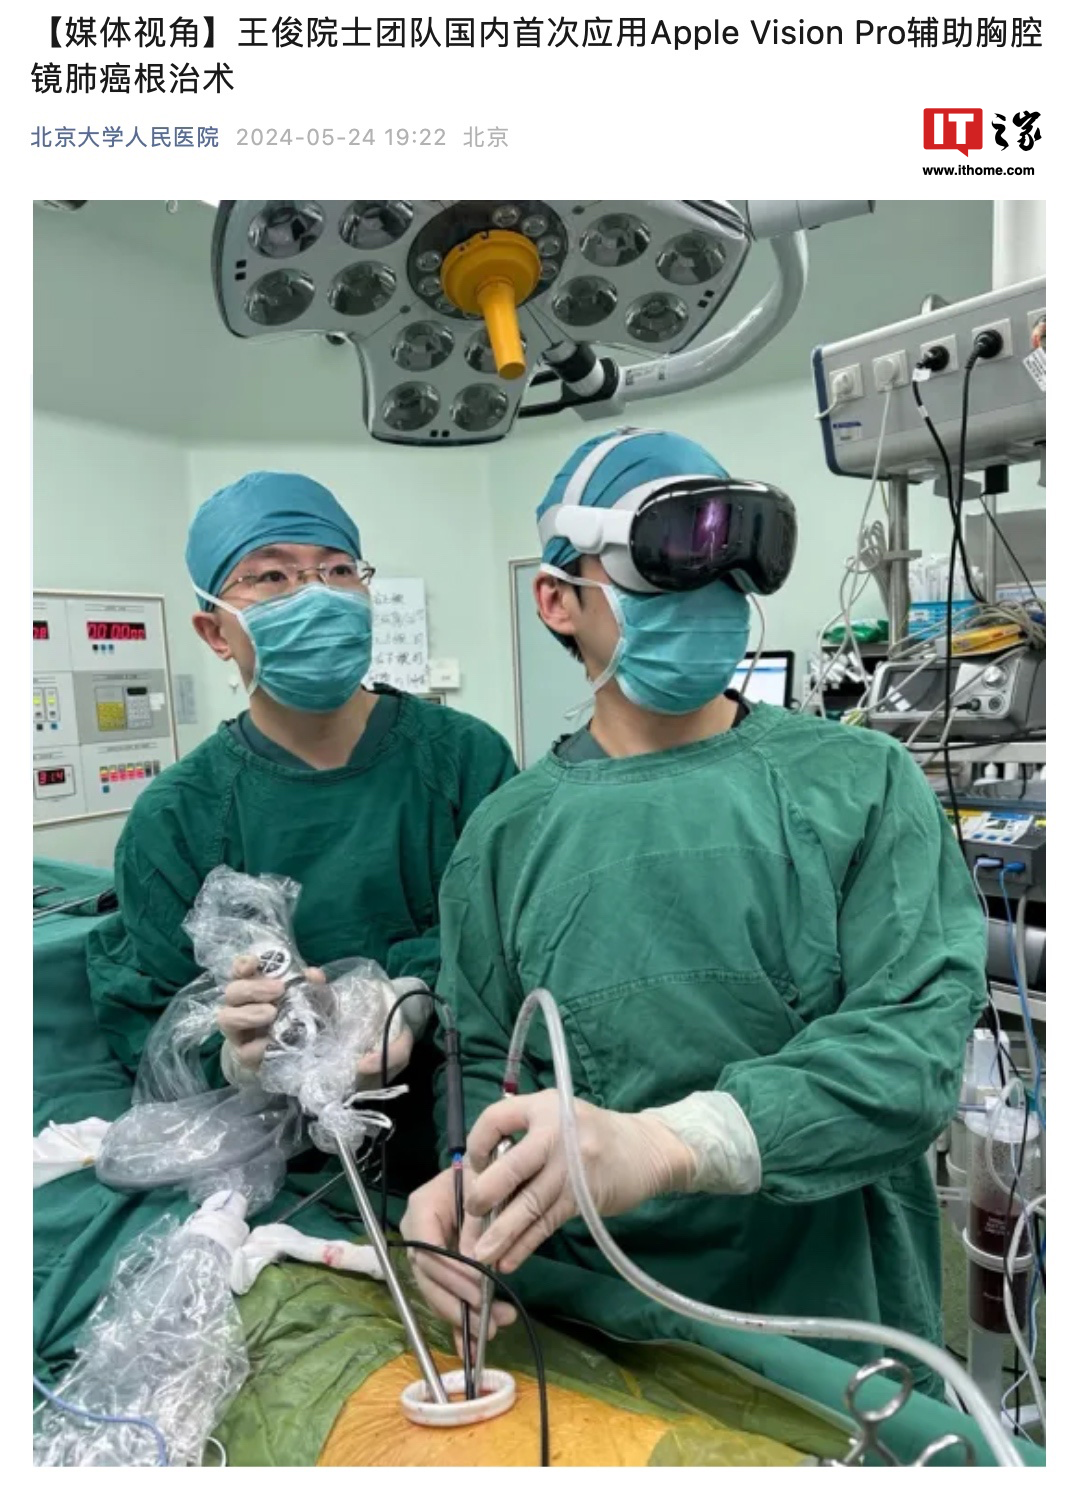 北大人民医院成功应用苹果 Vision Pro 头显完成肺癌根治术